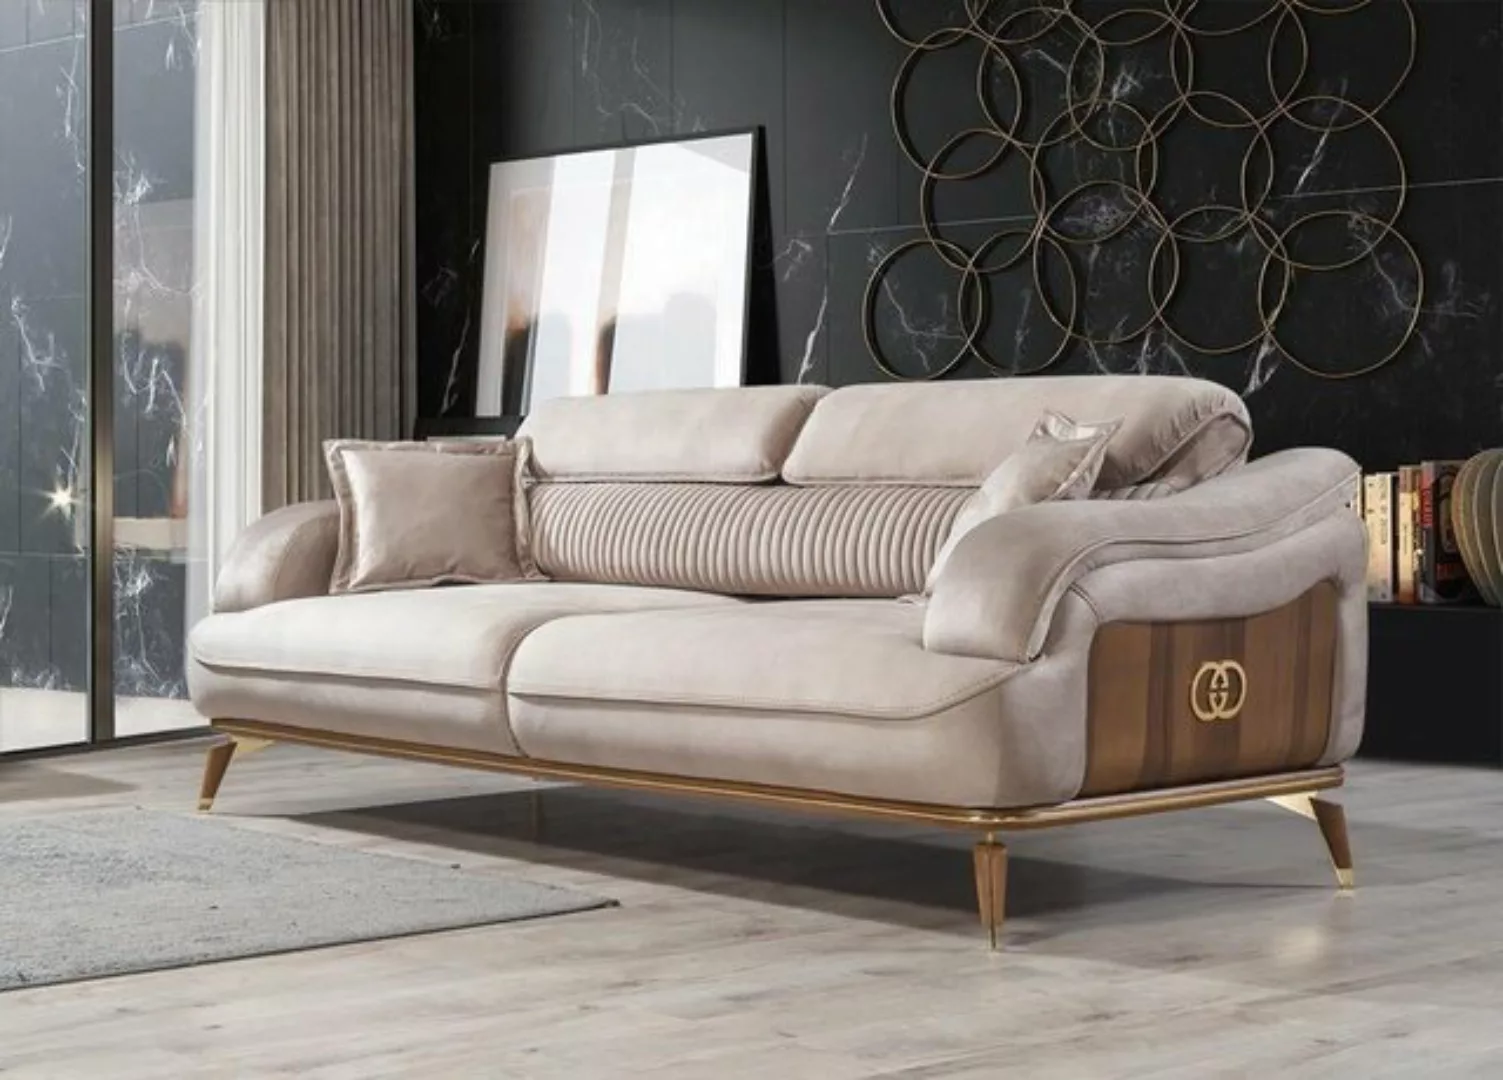 JVmoebel Sofa Dreisitzer Sofa 3 Sitzer Luxus Sofas Wohnzimmer Möbel Stoff D günstig online kaufen